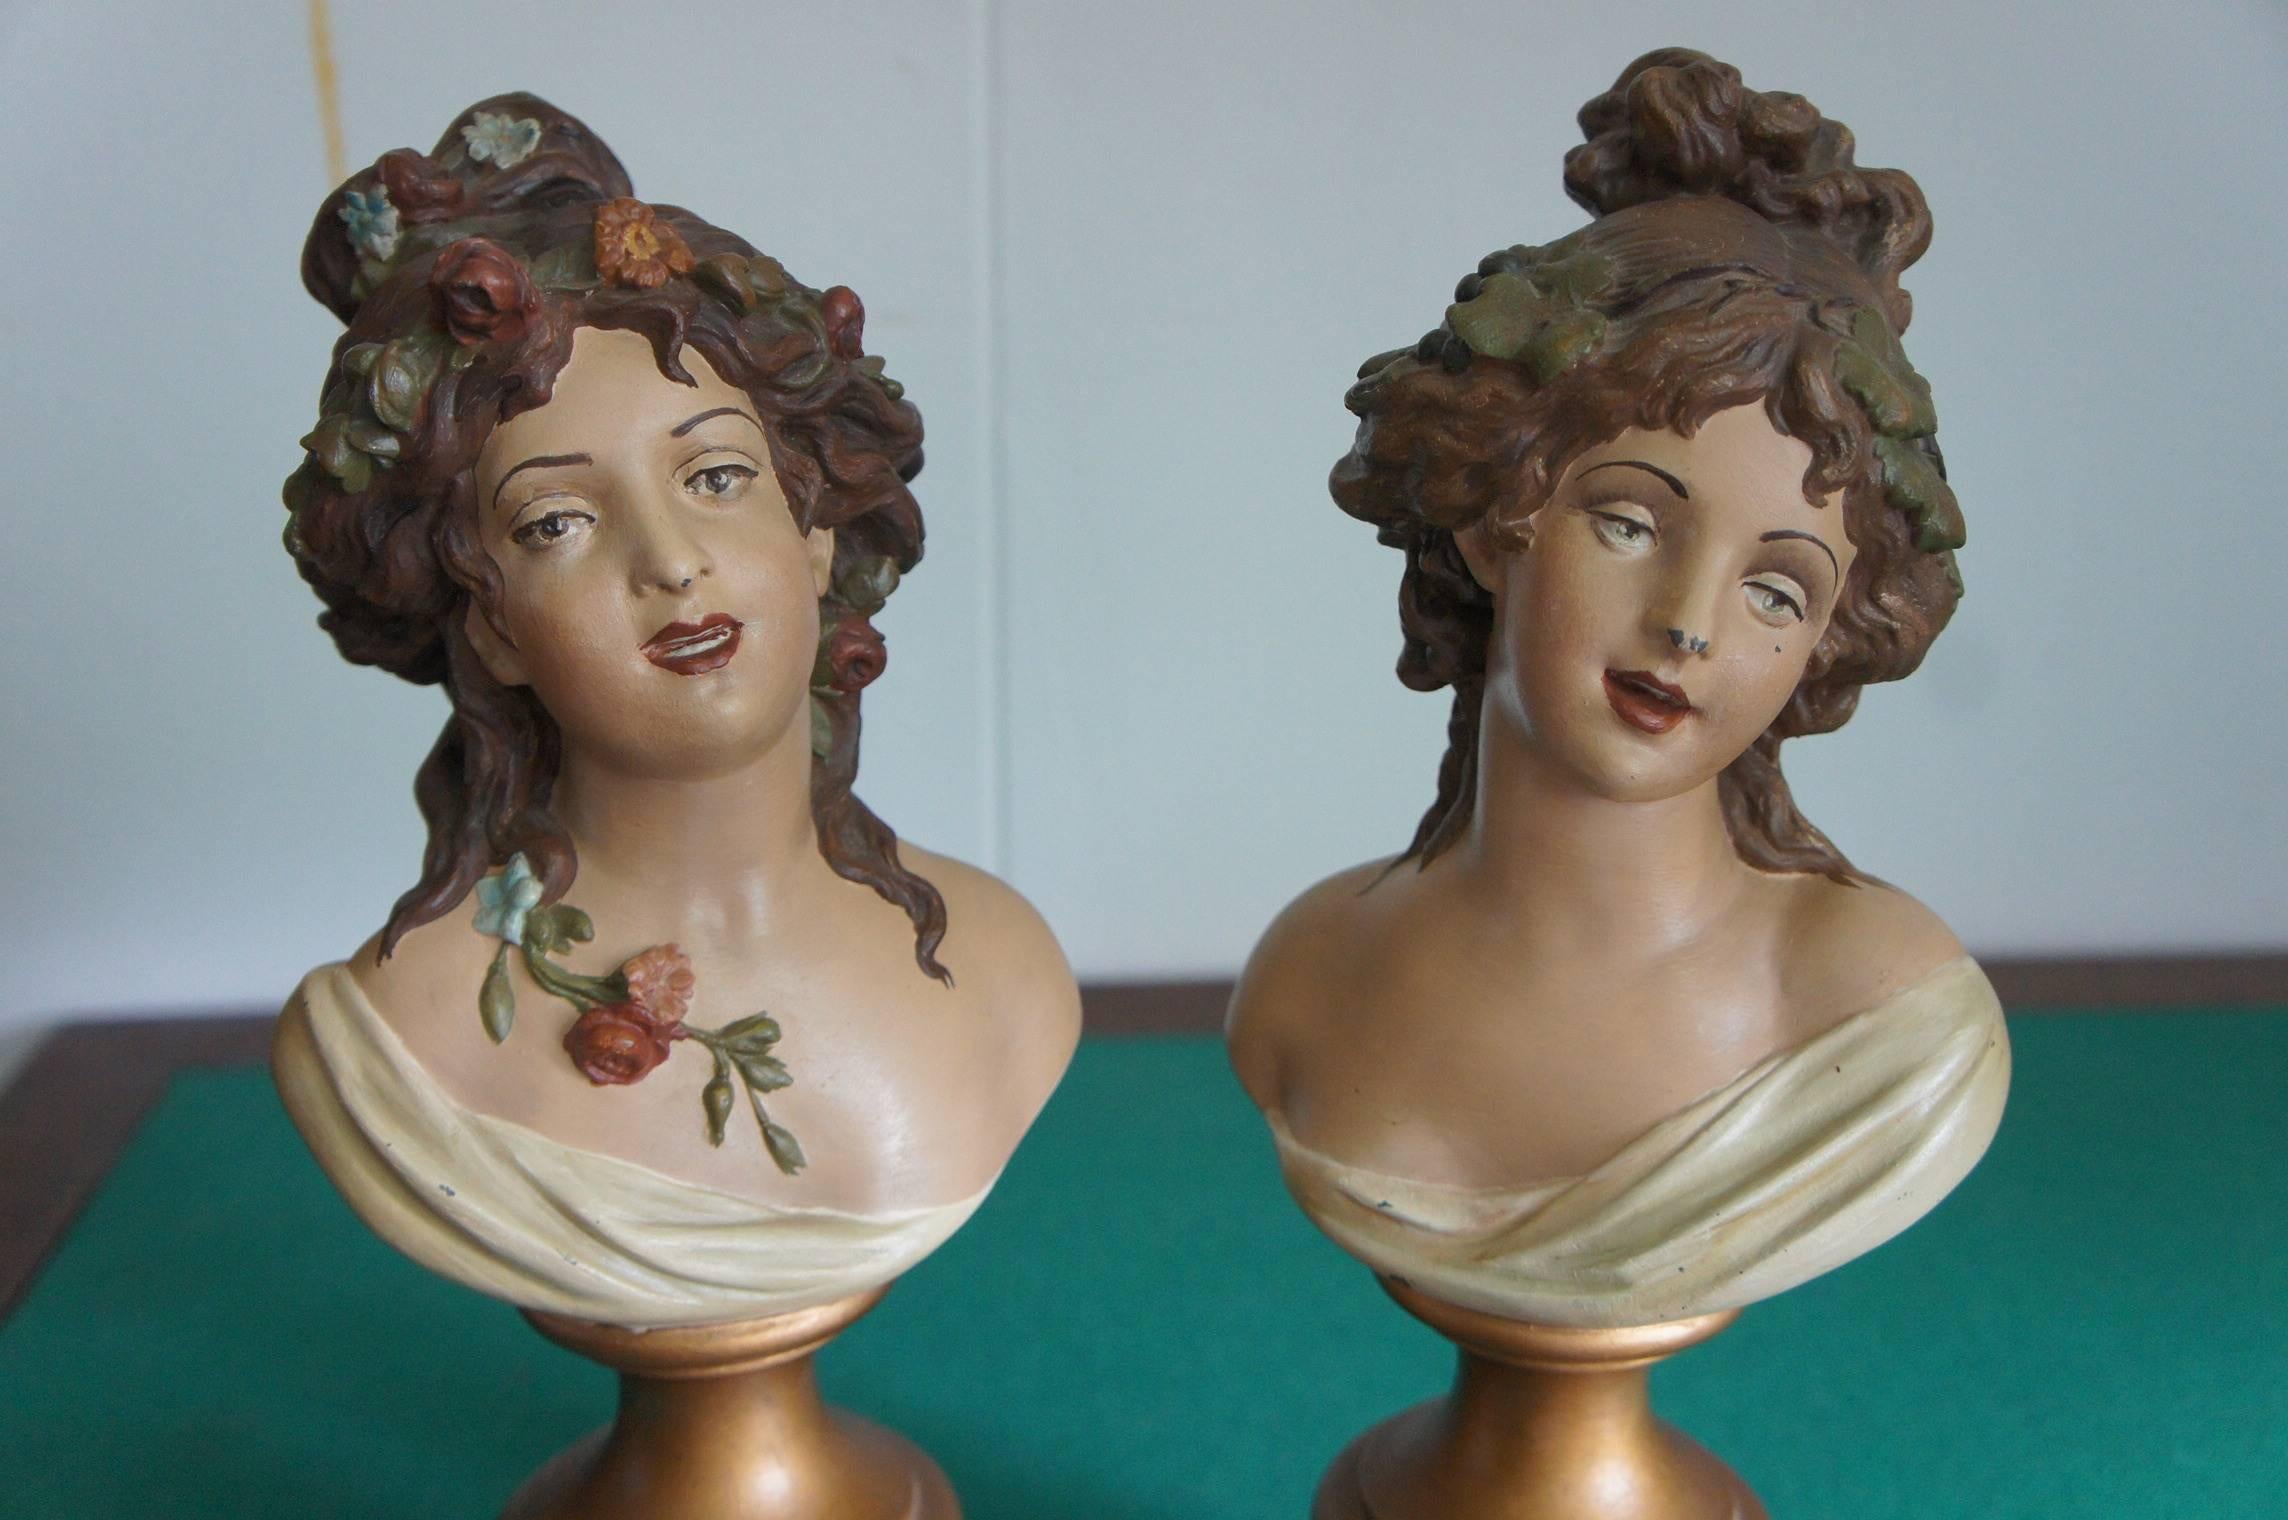 Rare paire de sculptures de dame de style Rococo en couleurs de terre par Claude Michel, (1738-1814).

Cette belle paire de sculptures de femmes attachantes et significatives a été réalisée à l'origine à la fin des années 1700 et les originaux ont